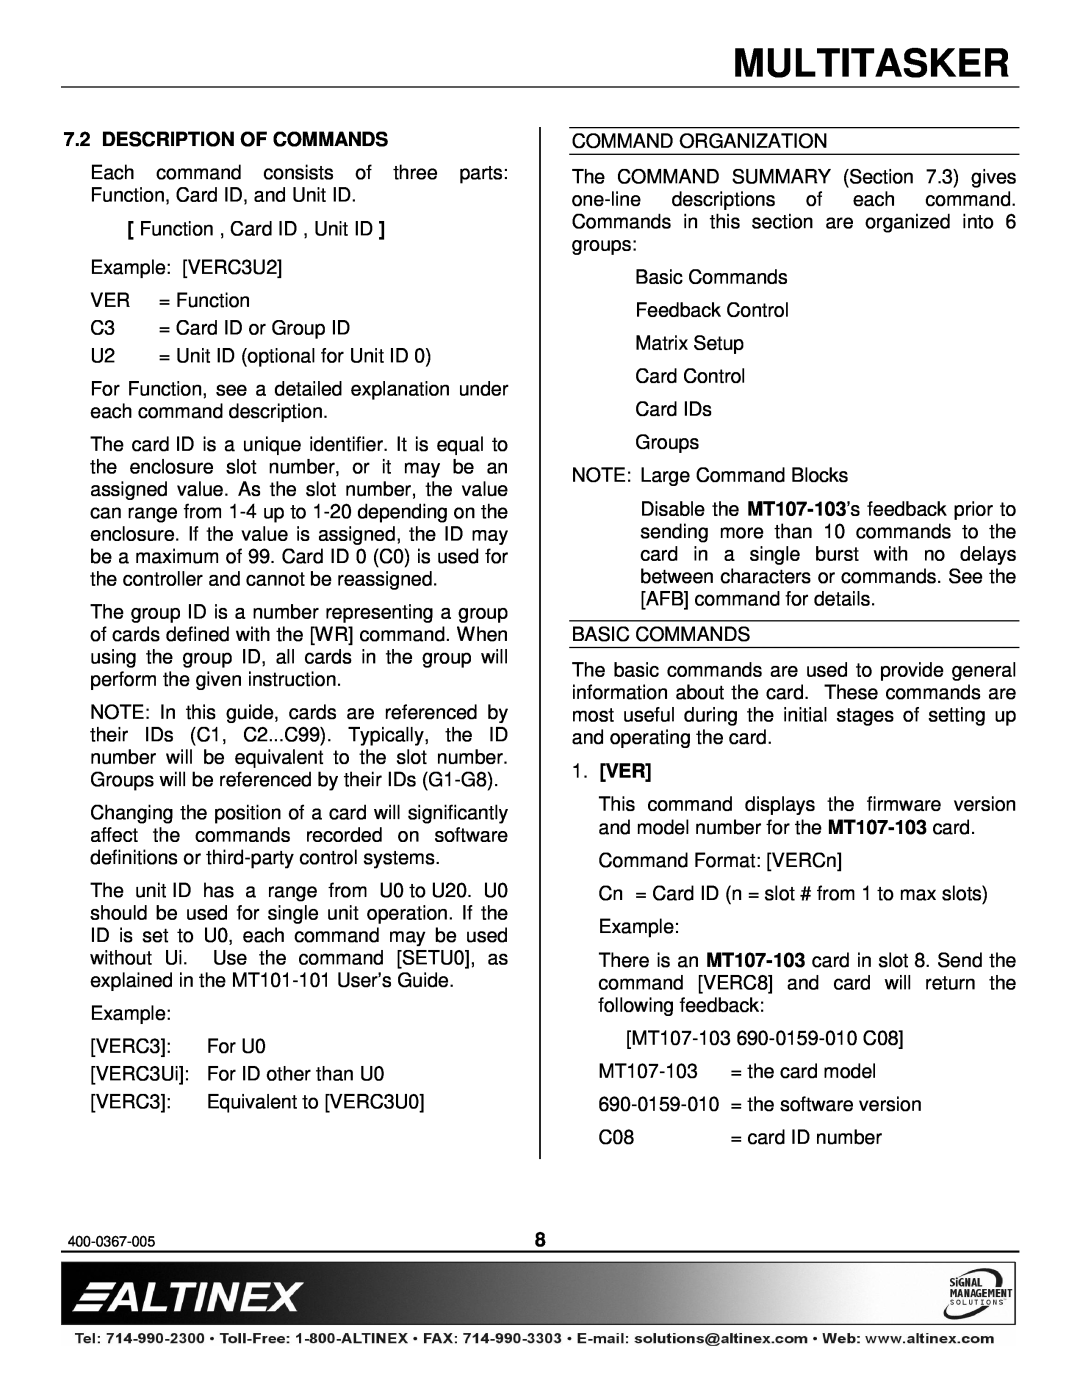 Altinex MT107-103 manual Description Of Commands, Ver, Multitasker 